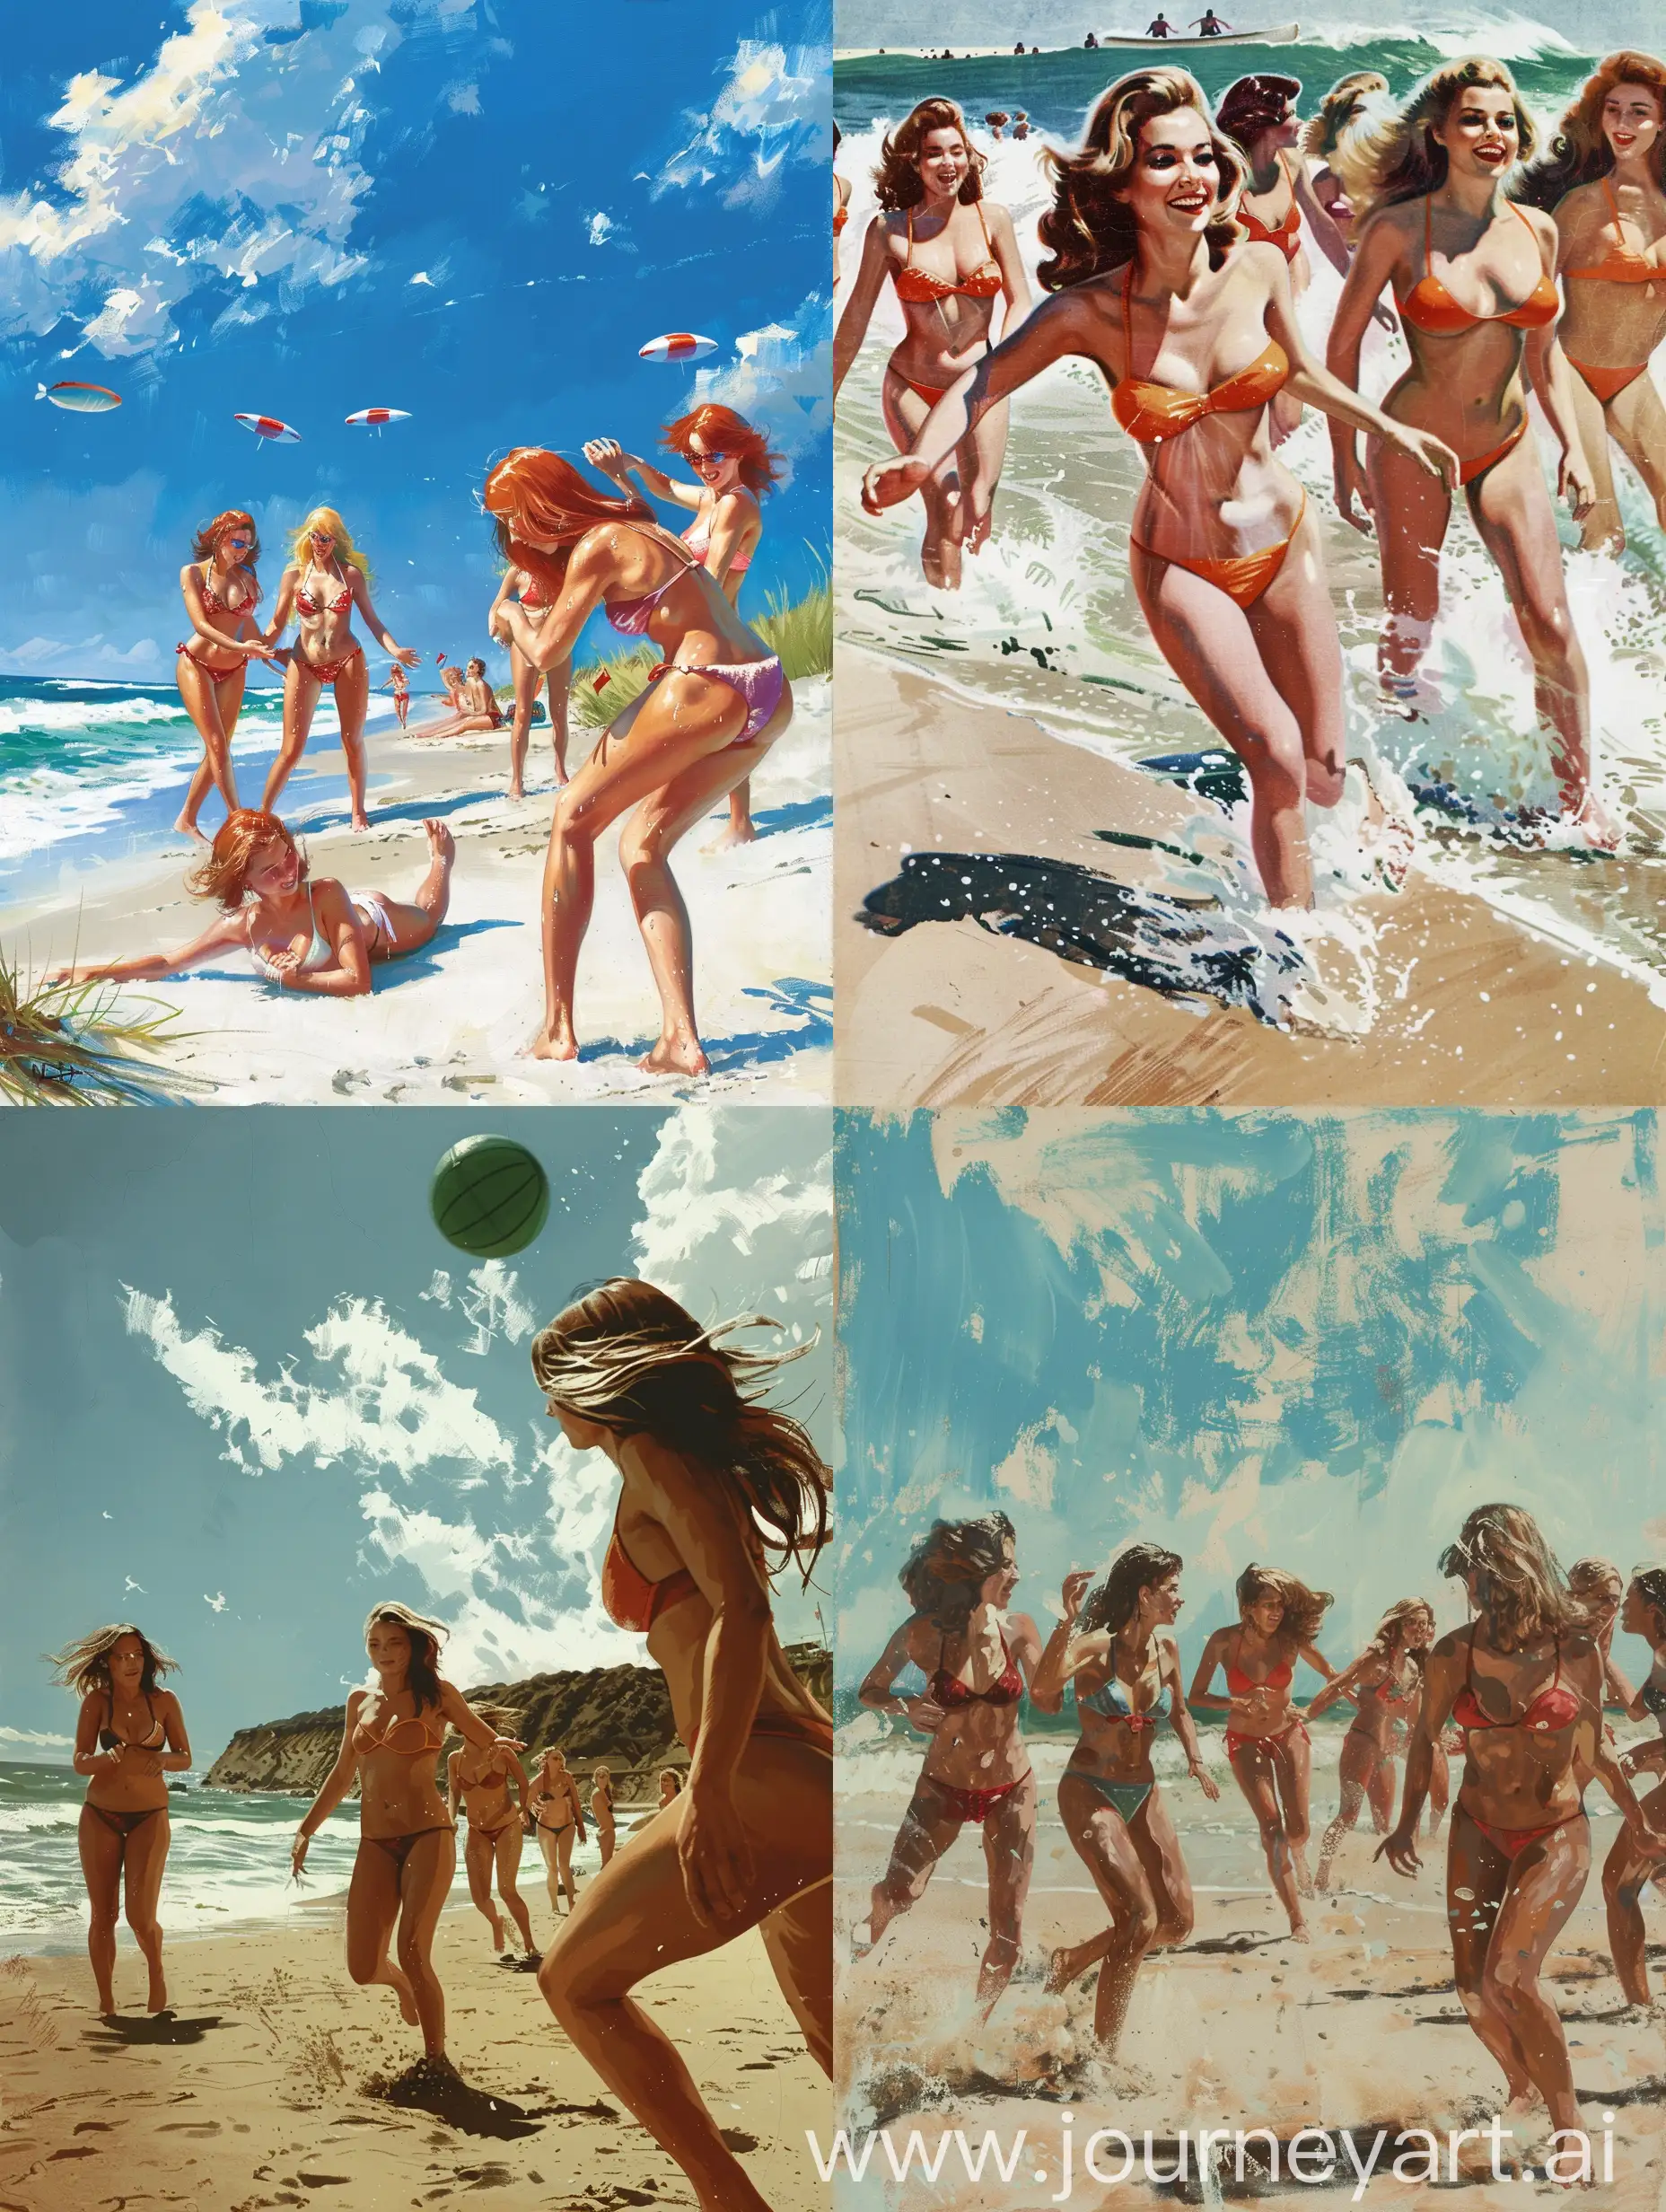 Bikini-Beach-Babes-Enjoying-Sunny-Day-Fun